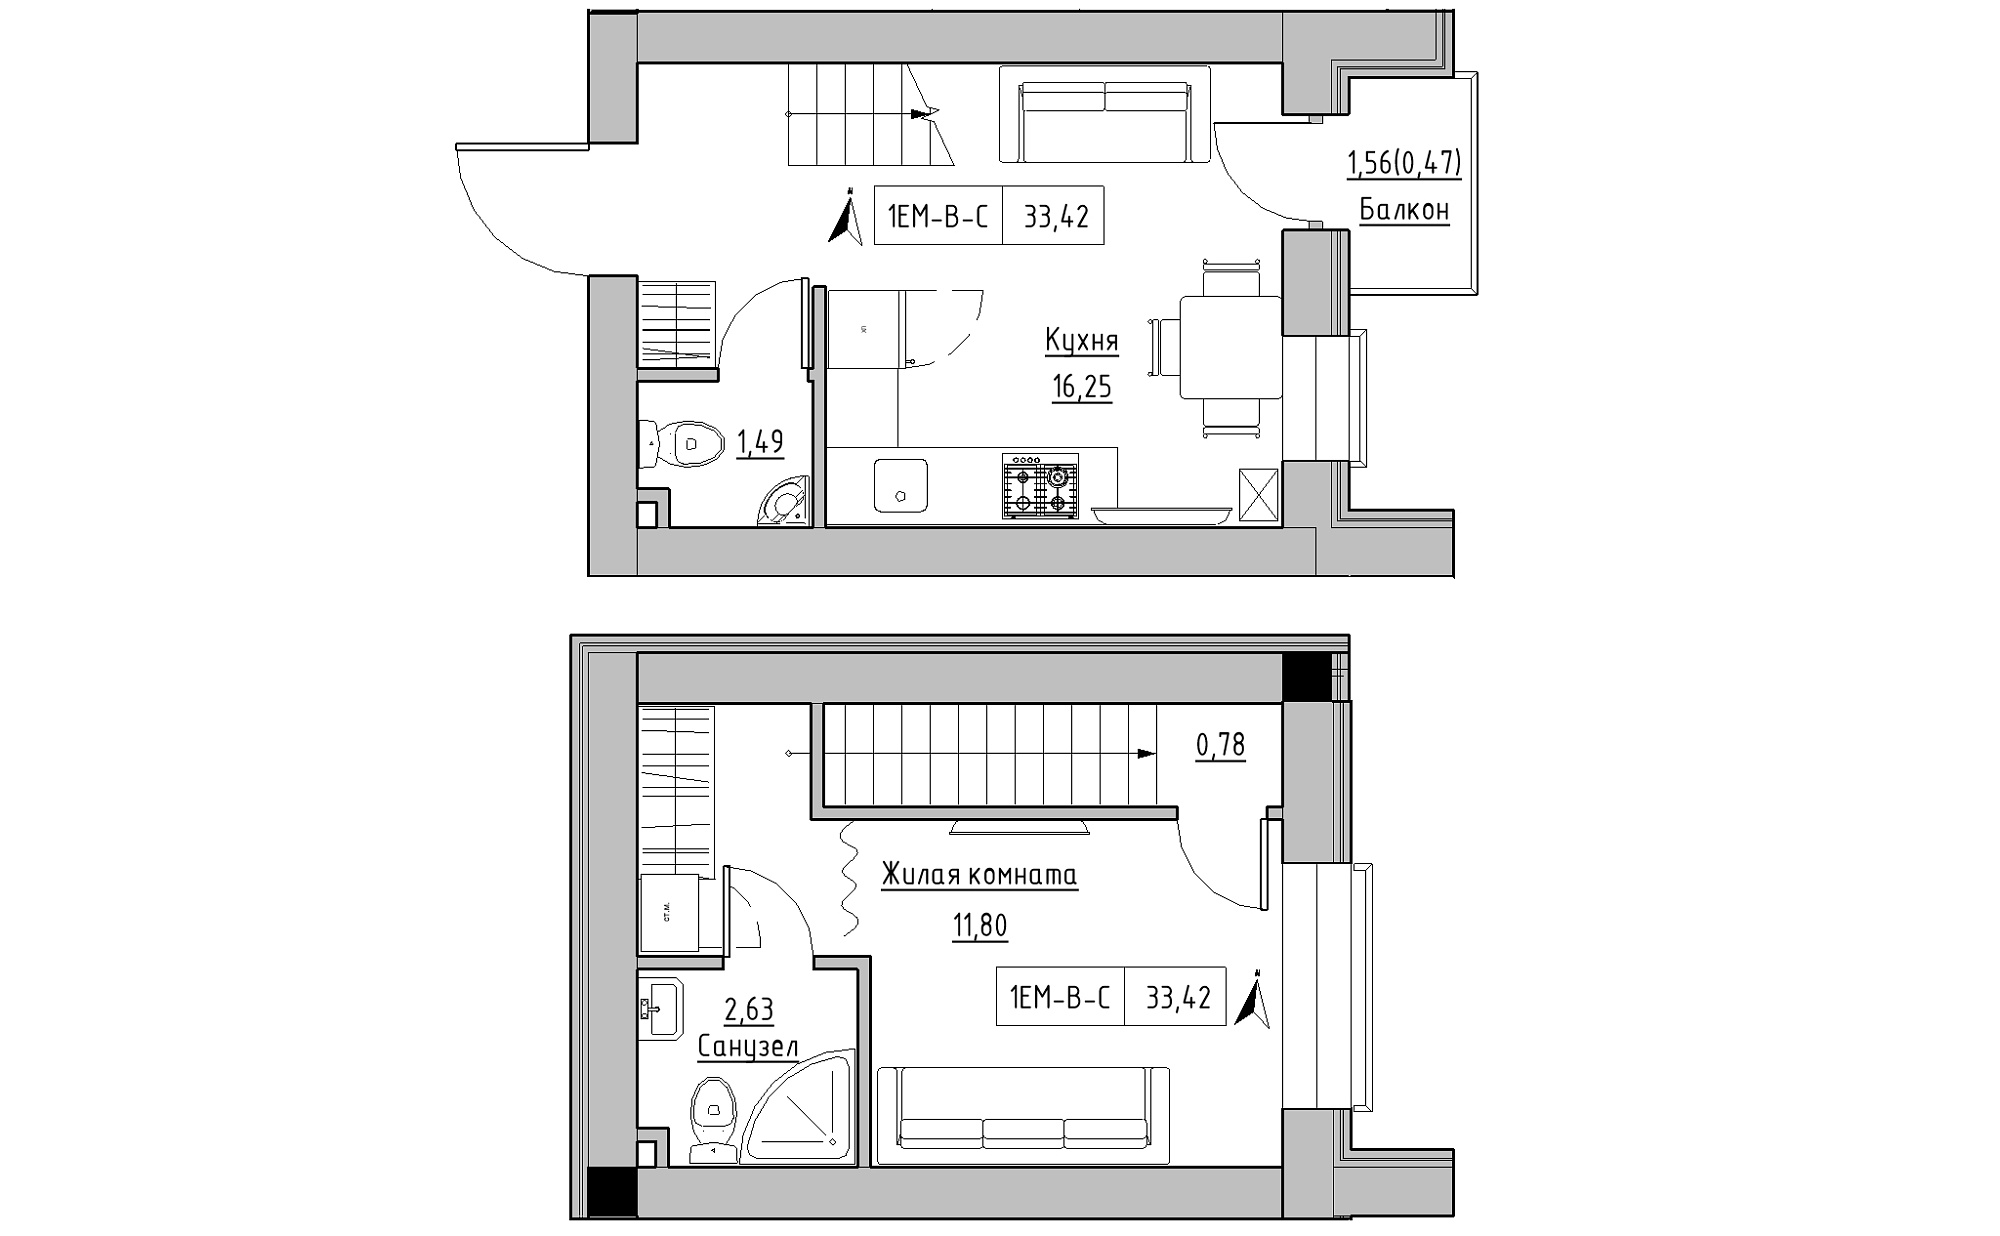 Planning 2-lvl flats area 33.42m2, KS-023-05/0006.